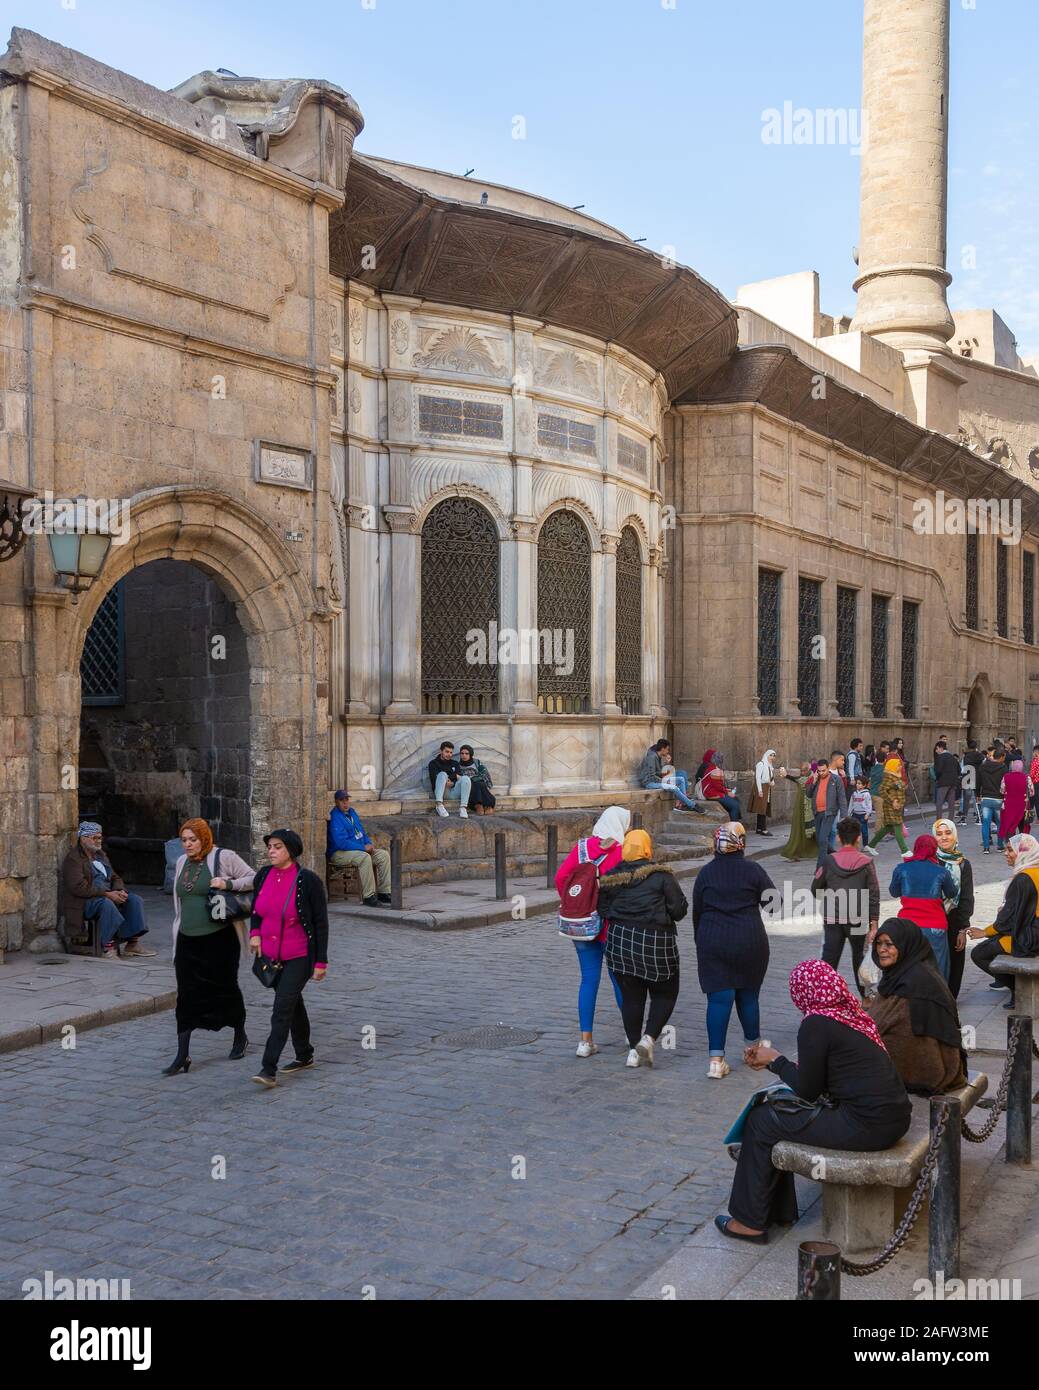 Cairo, Egypt- December 14 2019: Moez Street with facade of Ottoman era historic Soliman Agha El Silahdar complex building, Old Cairo Stock Photo